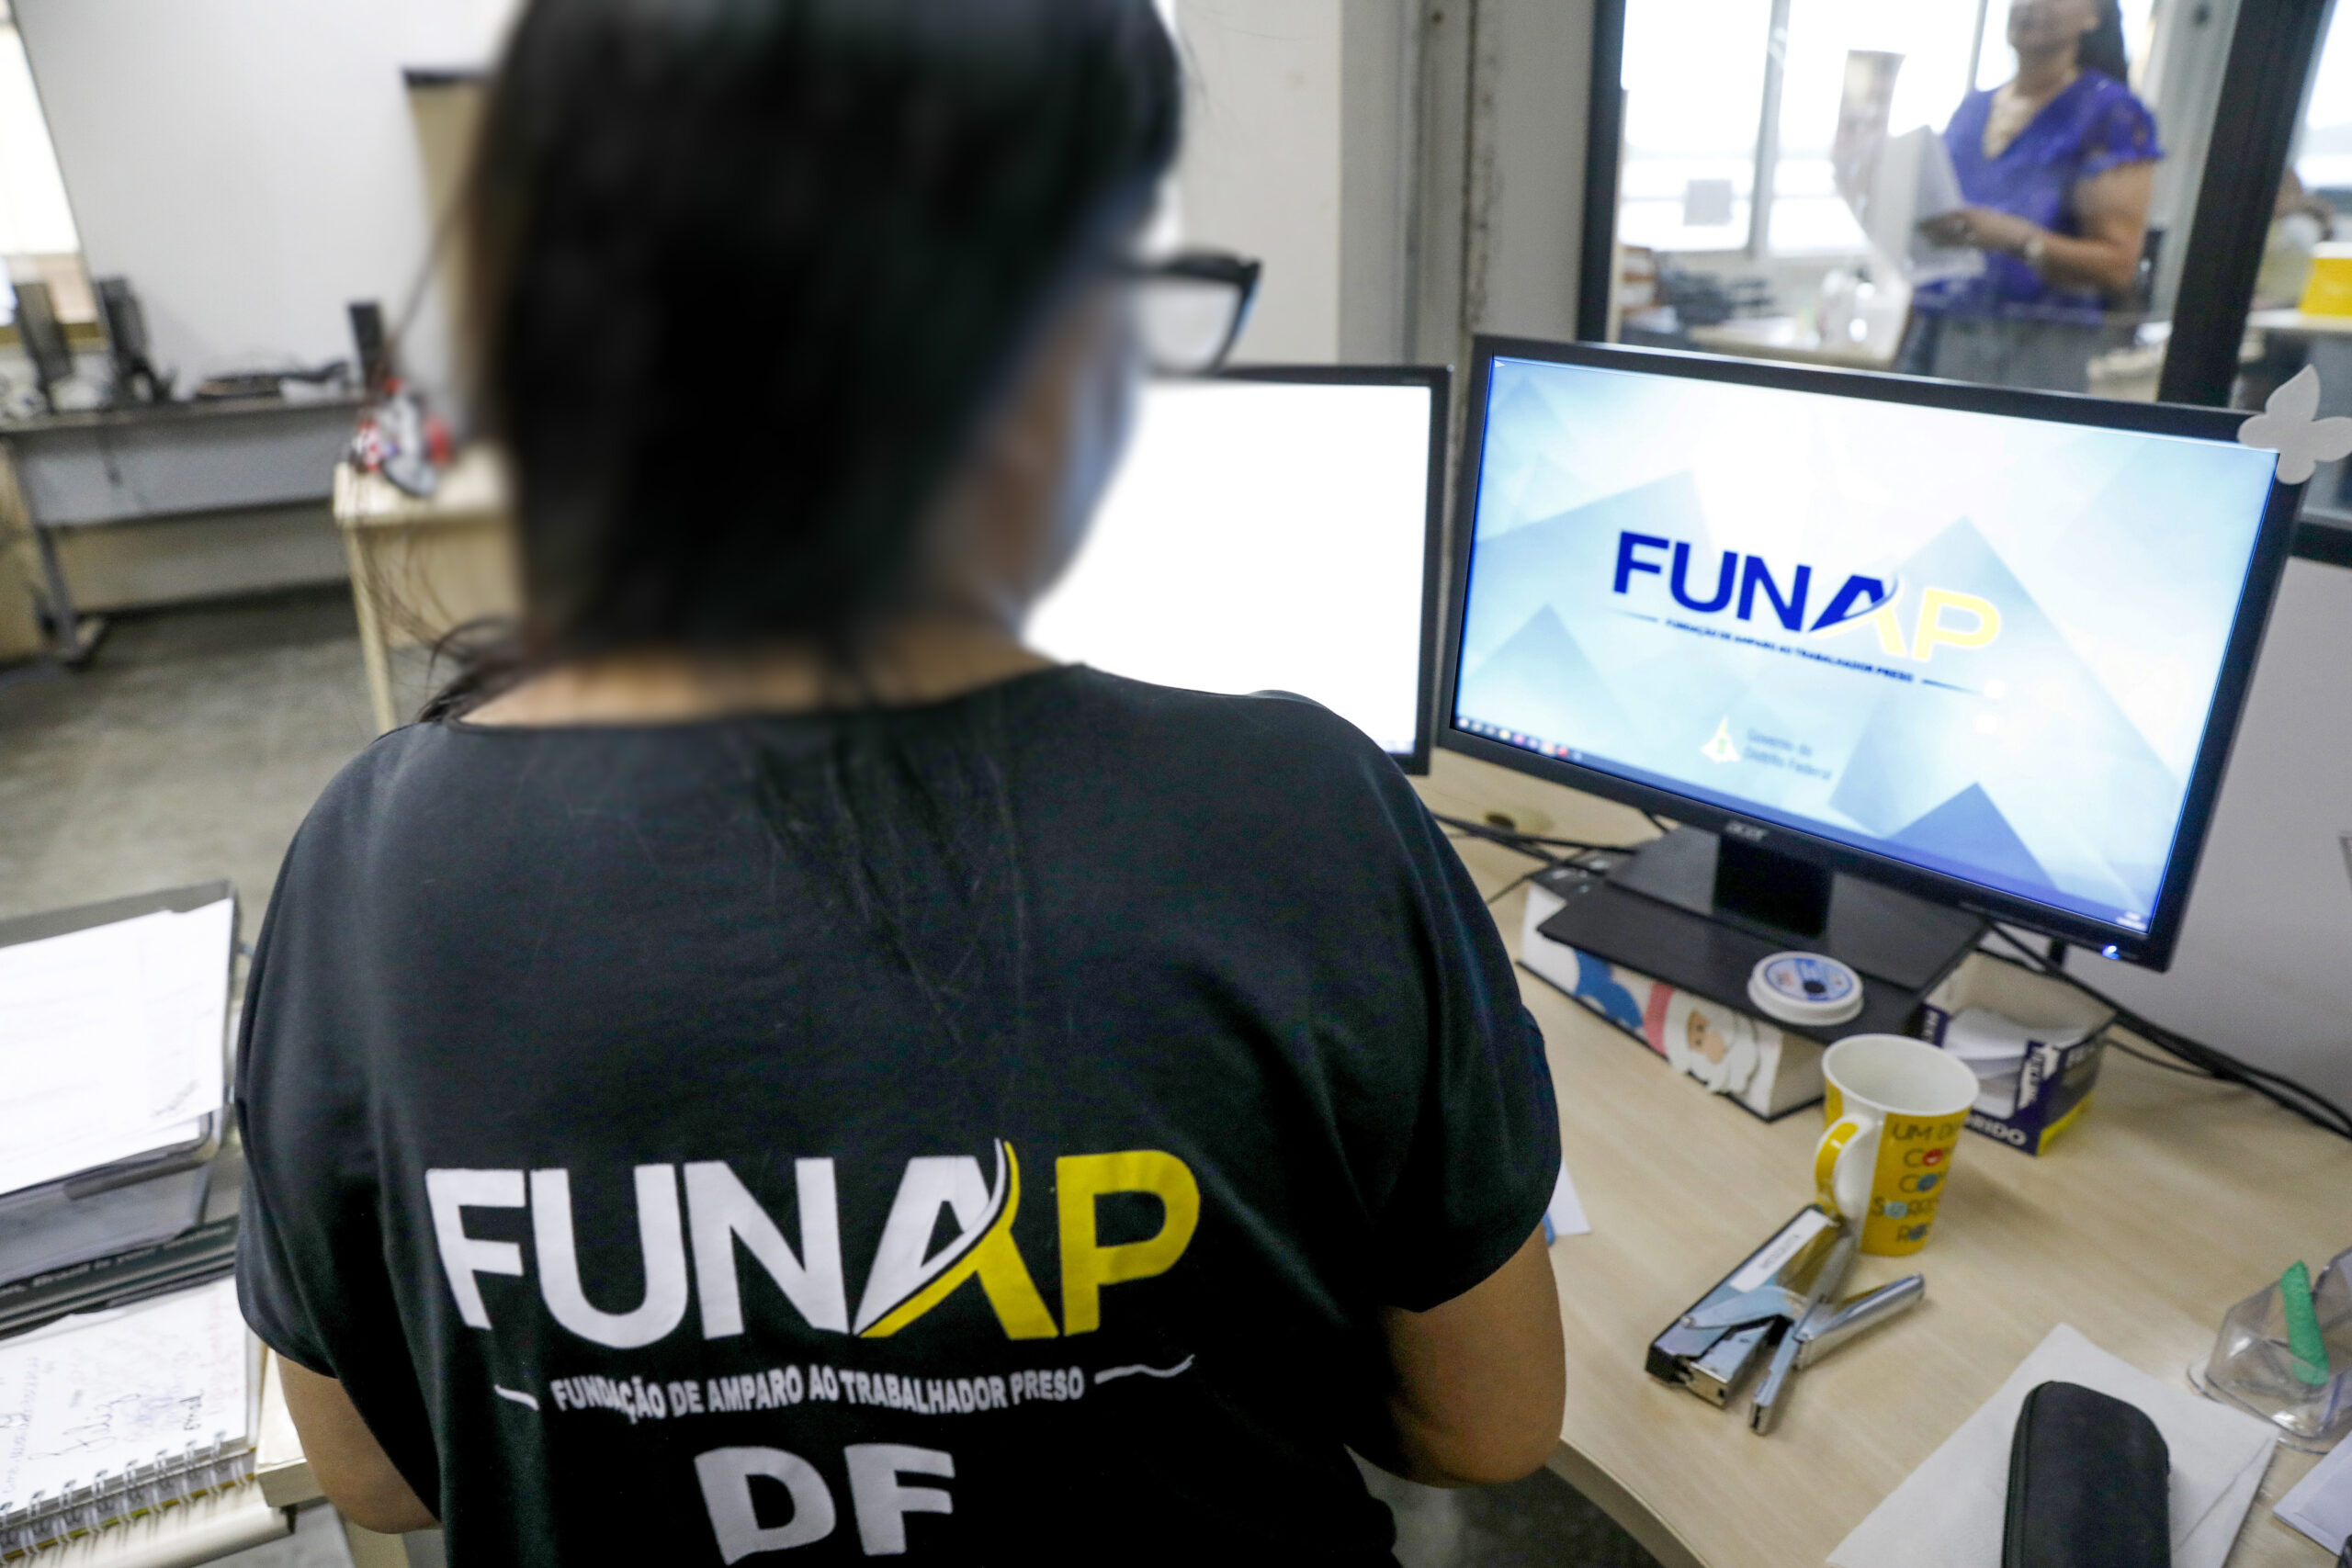 Com uma sede própria, no SIA, a Funap poderá reverter o valor do aluguel em políticas públicas e ações